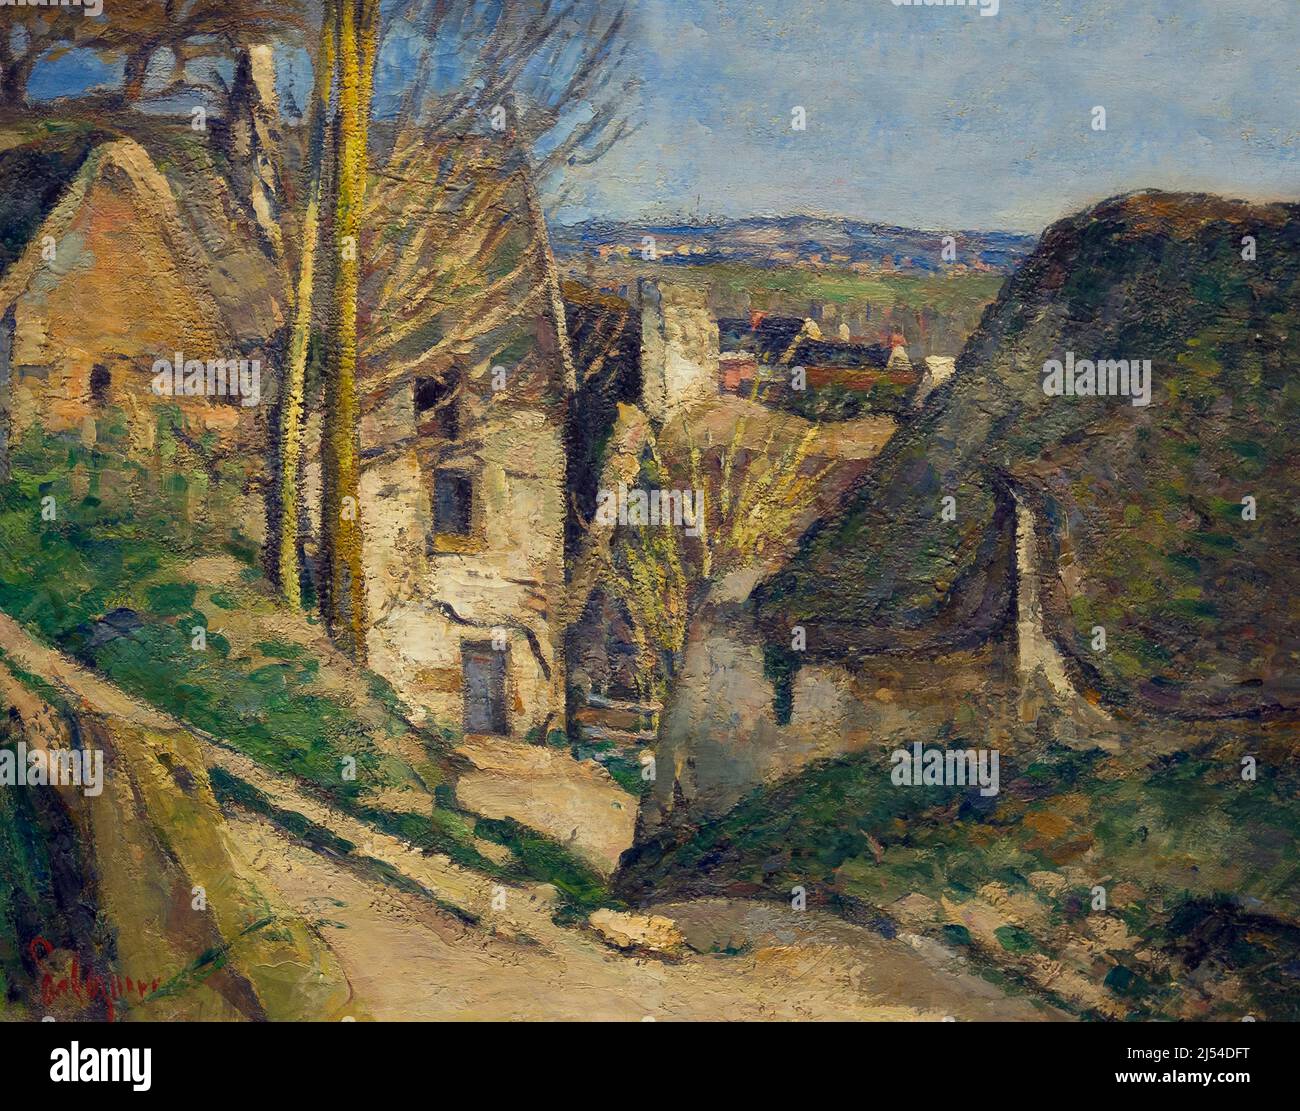 La Maison de l'Homme pendu, la Maison de l'Homme pendu, Auvers-sur-Oise, la Maison du Pendu, Paul Cezanne, 1873, Musée d'Orsay, Paris, France, Europe Banque D'Images